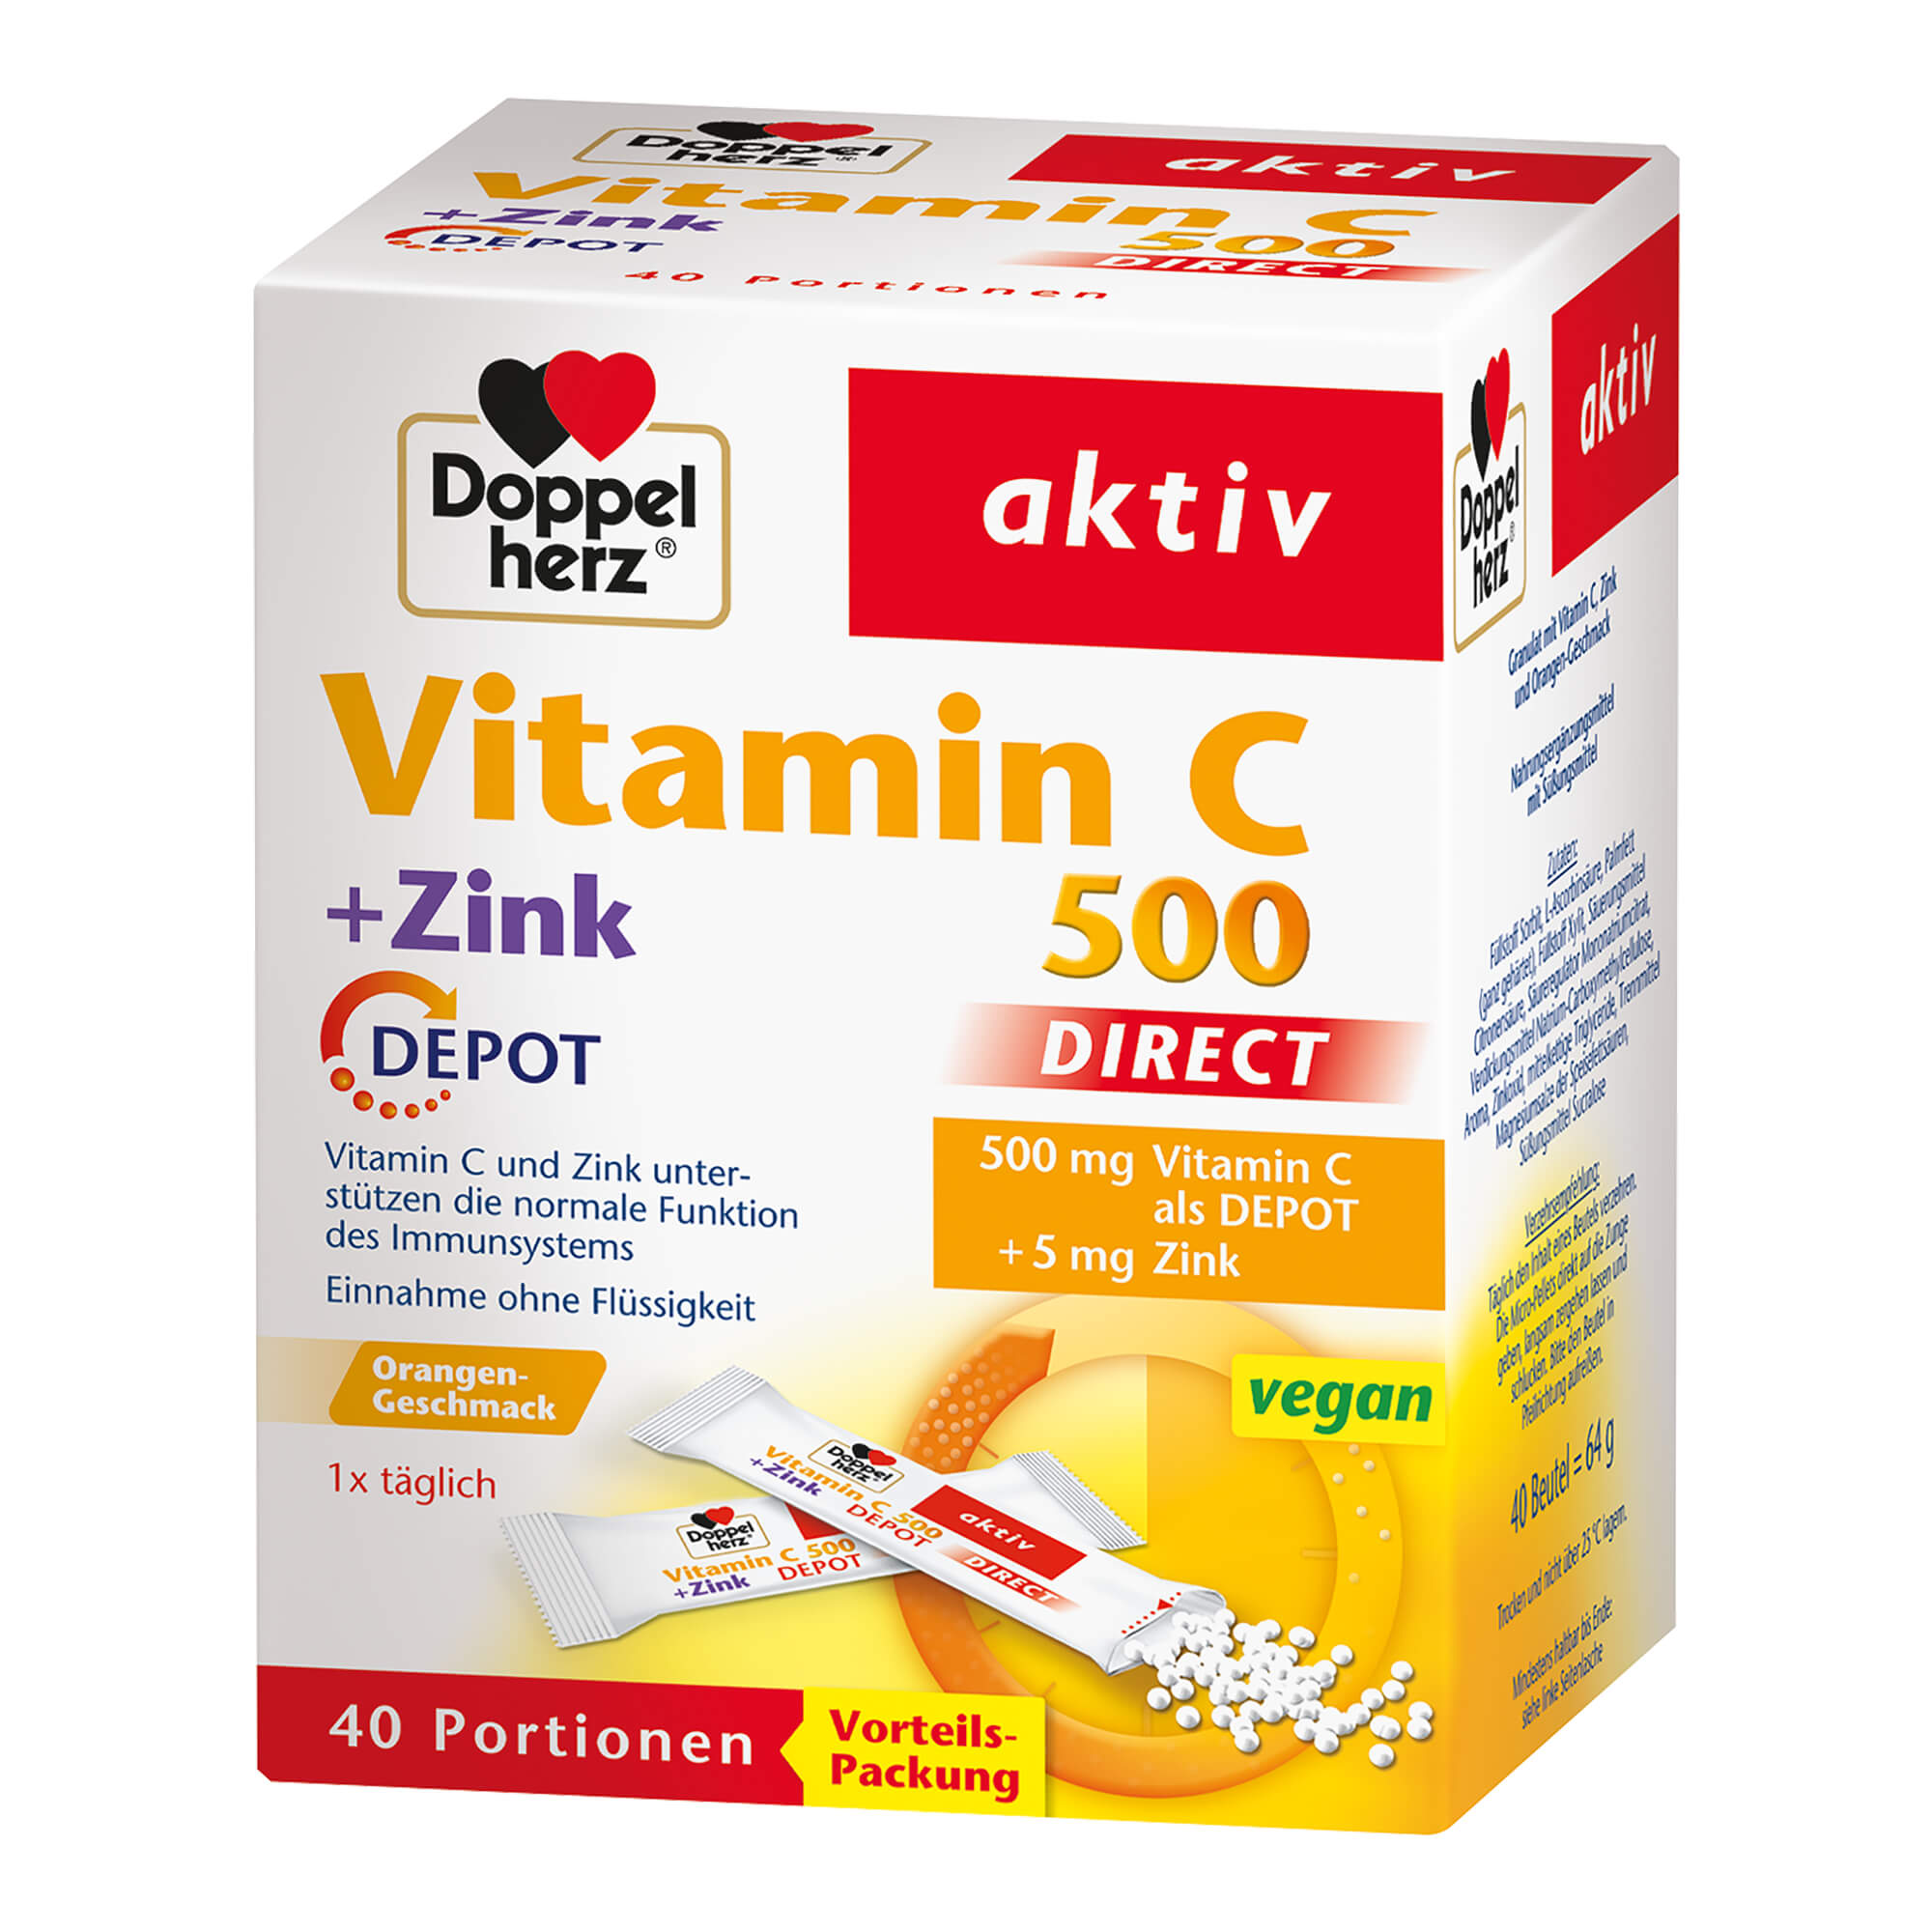 Nahrungsergänzungsmittel mit Vitamin C, Zink und Orangen-Geschmack.